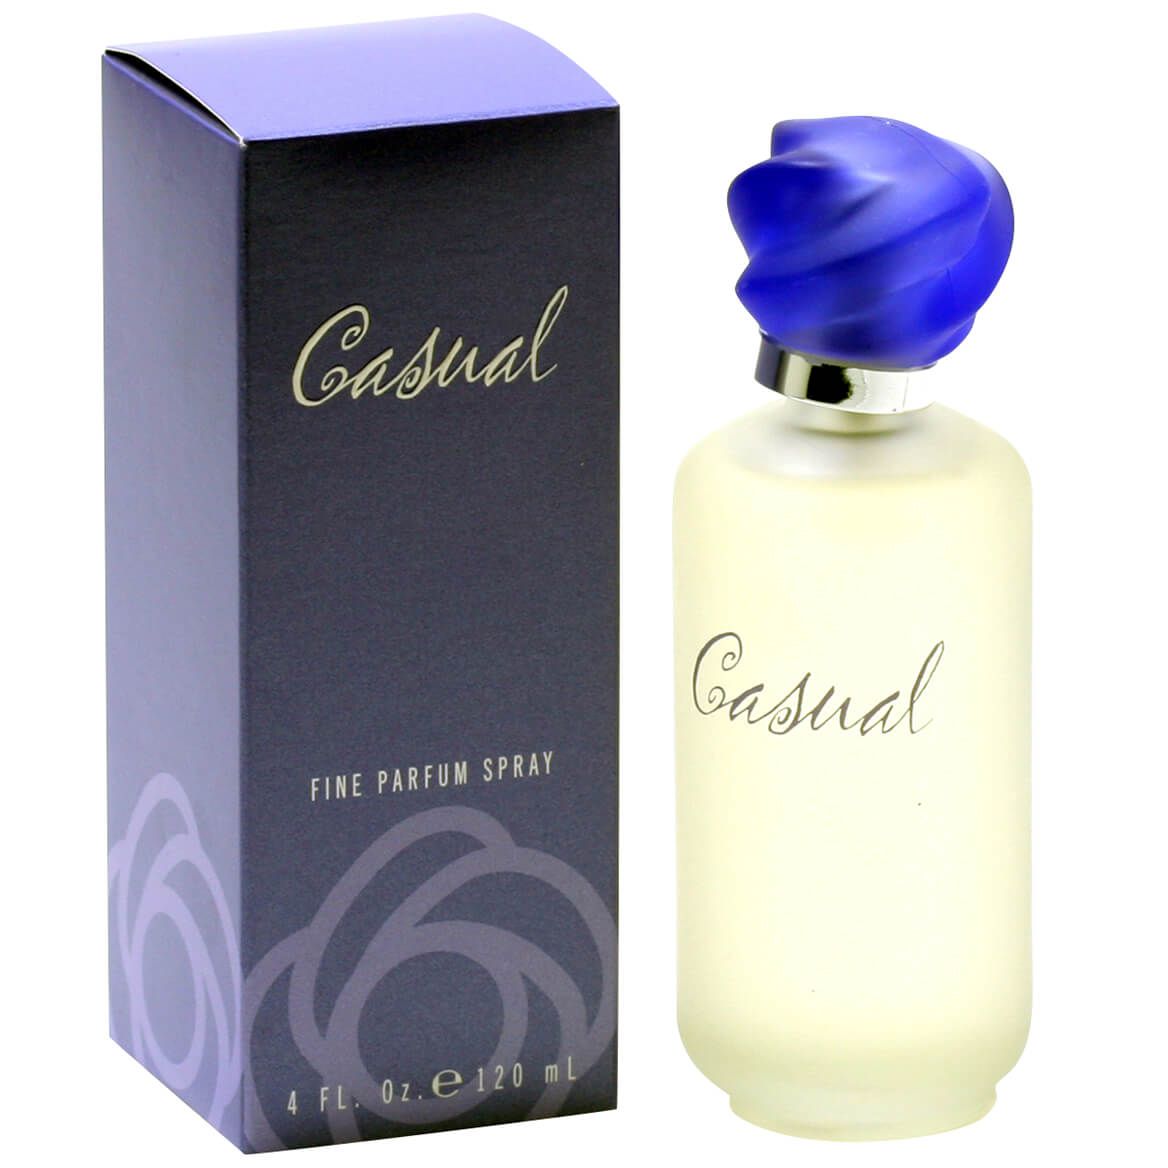 Casual by Paul Sebastian Fine Parfum Spray + '-' + 350135